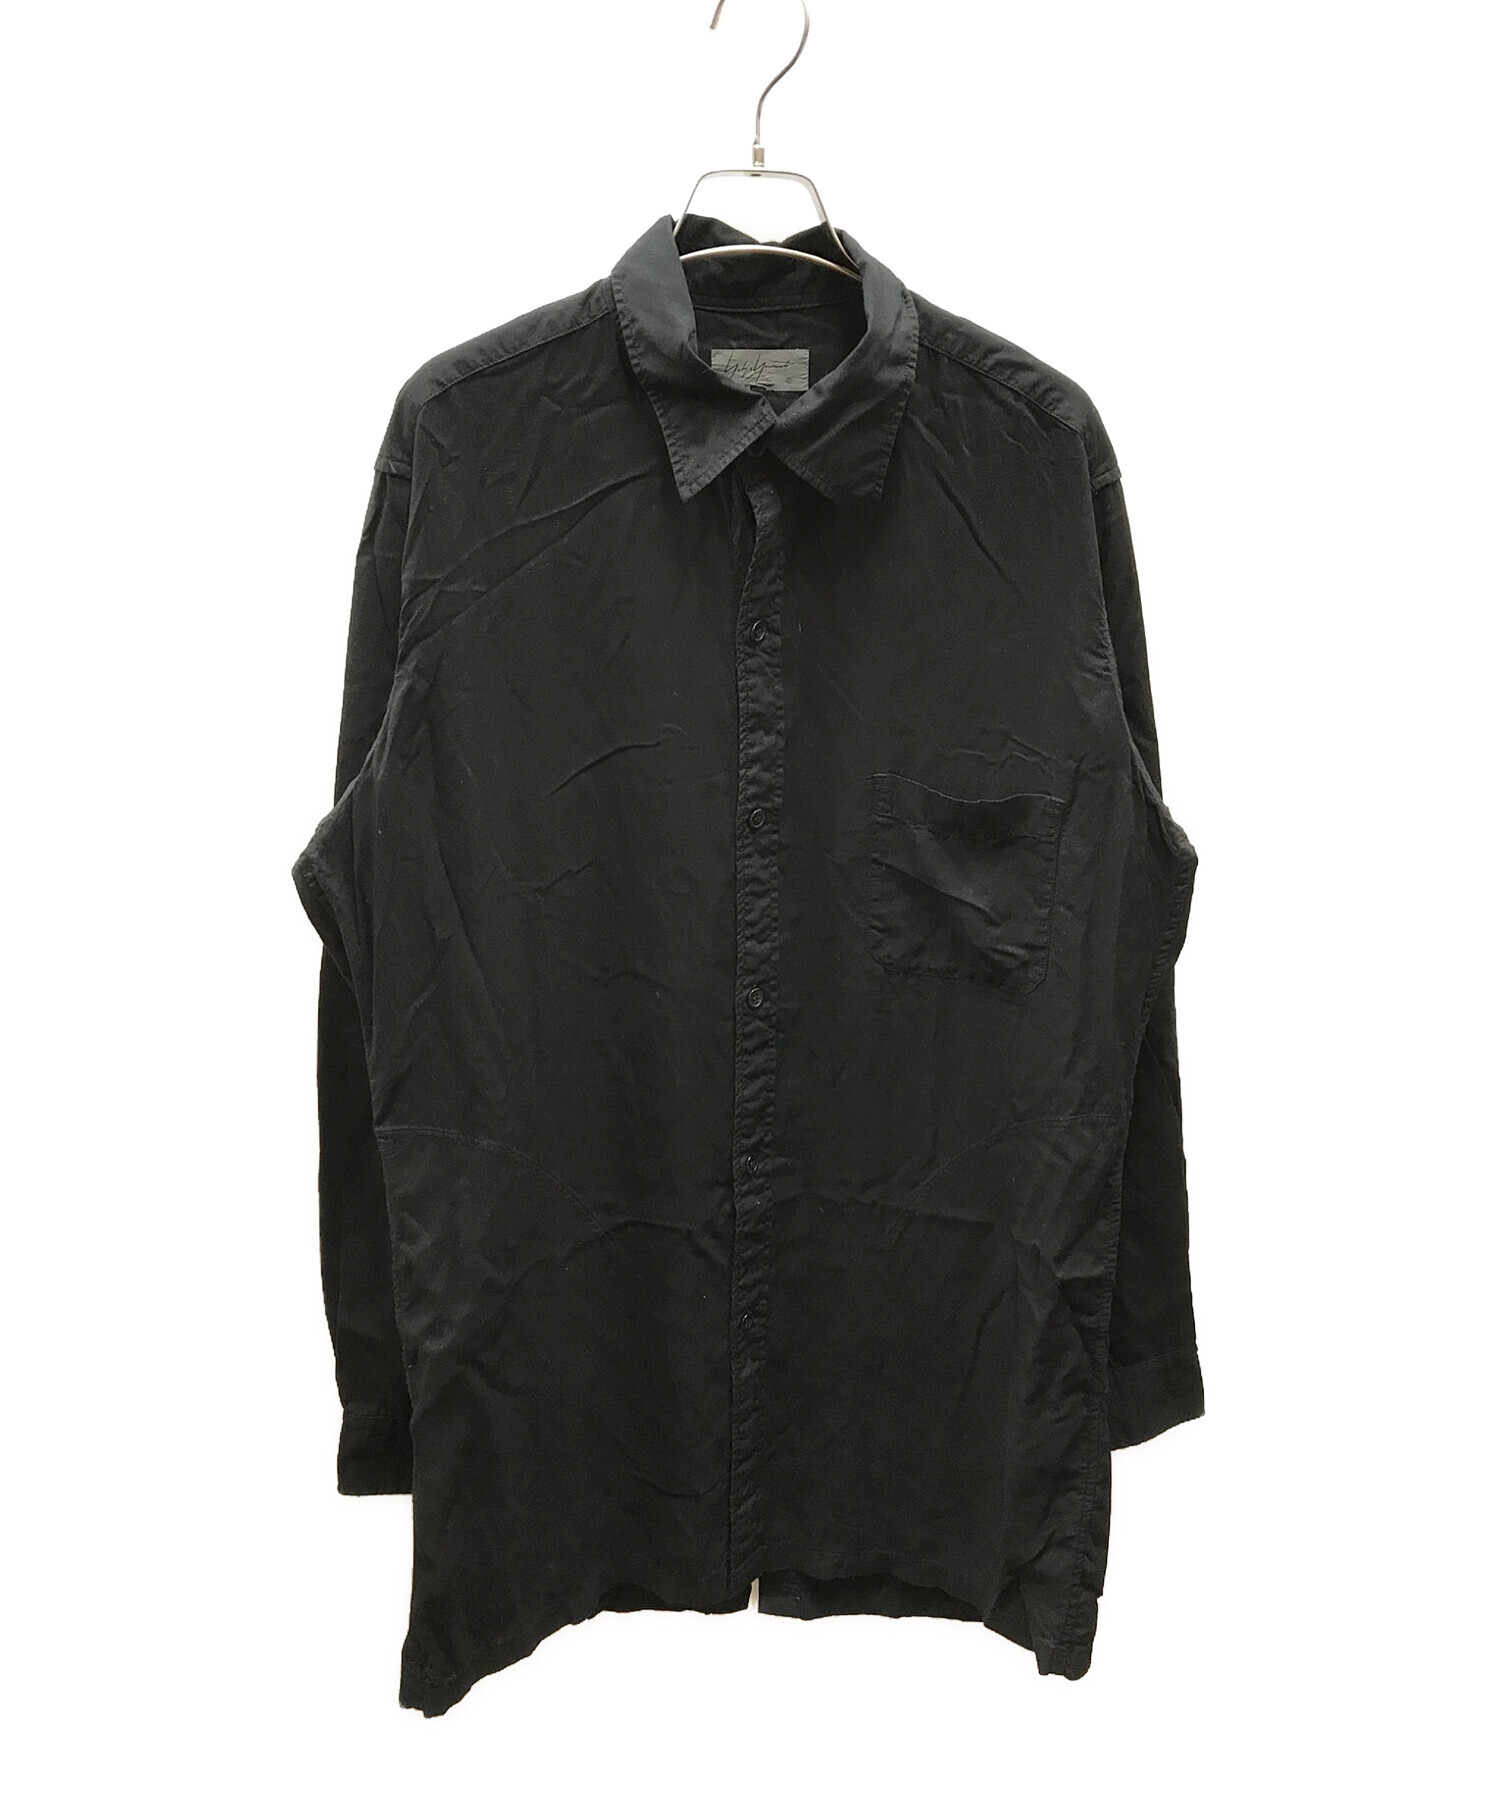 Yohji Yamamoto pour homme (ヨウジヤマモト プールオム) 後開きロングスリーブシャツ ブラック サイズ:2